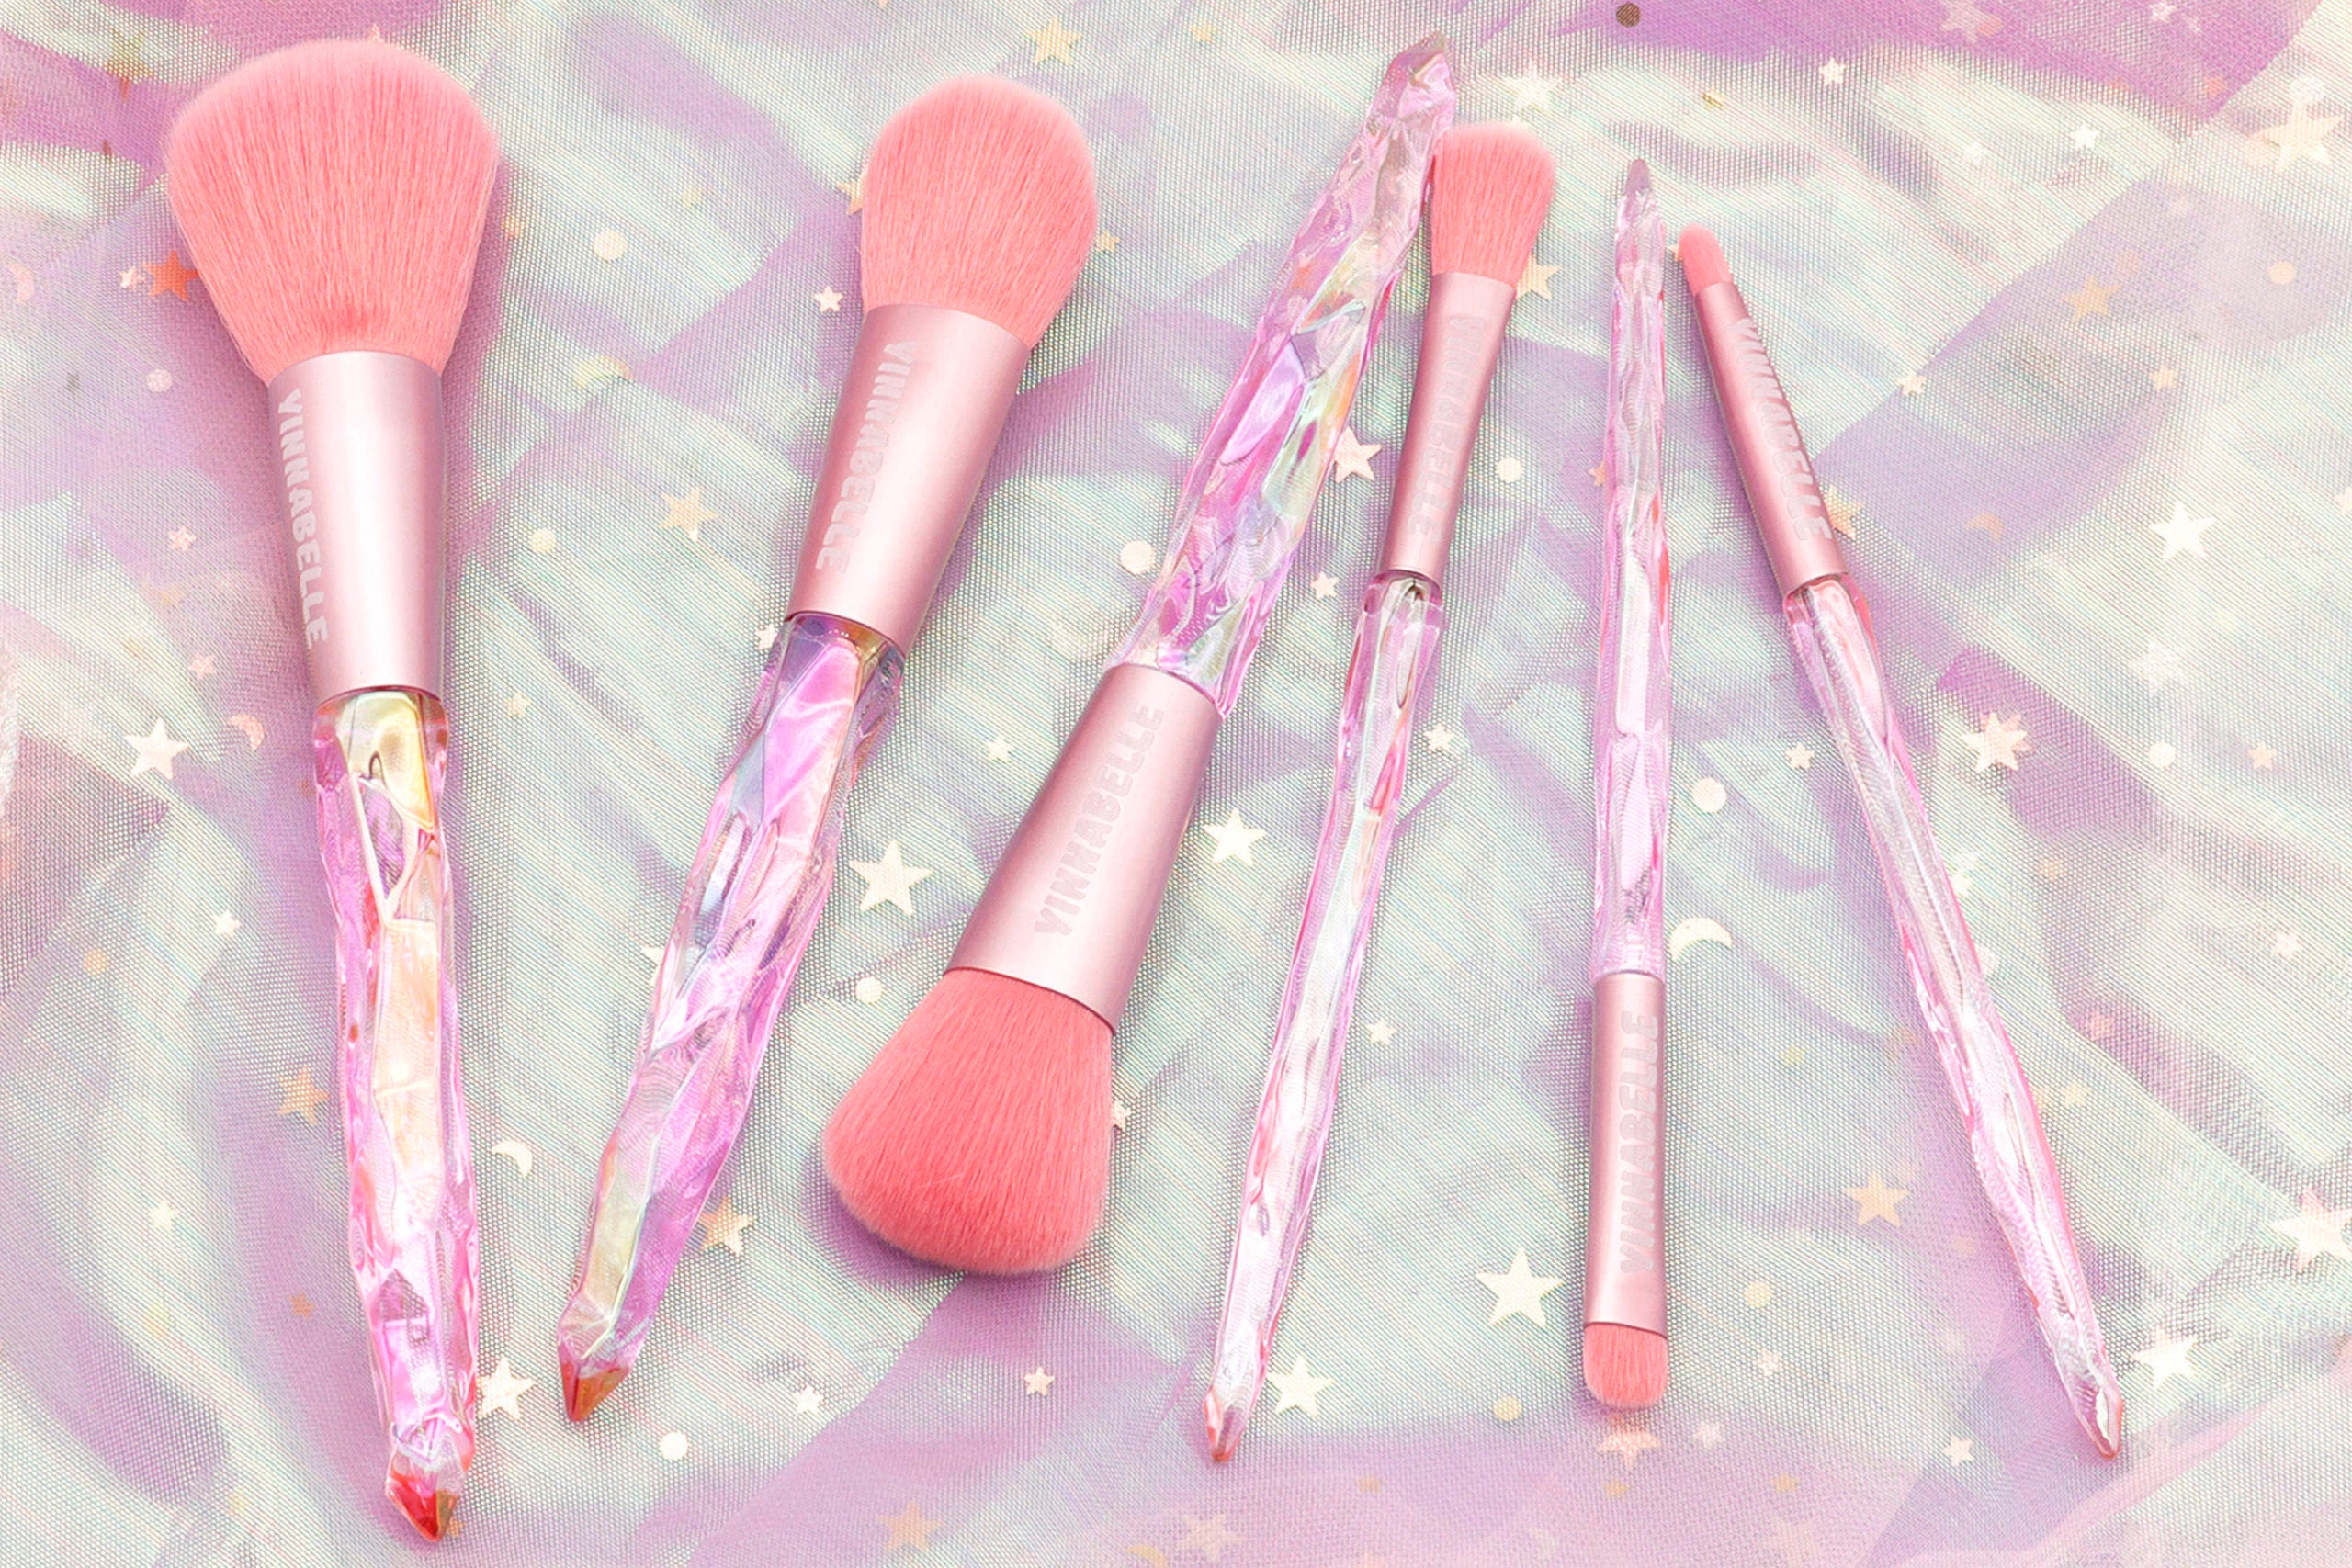 Pink Crystal Makeup Brushes 10 pieces Set